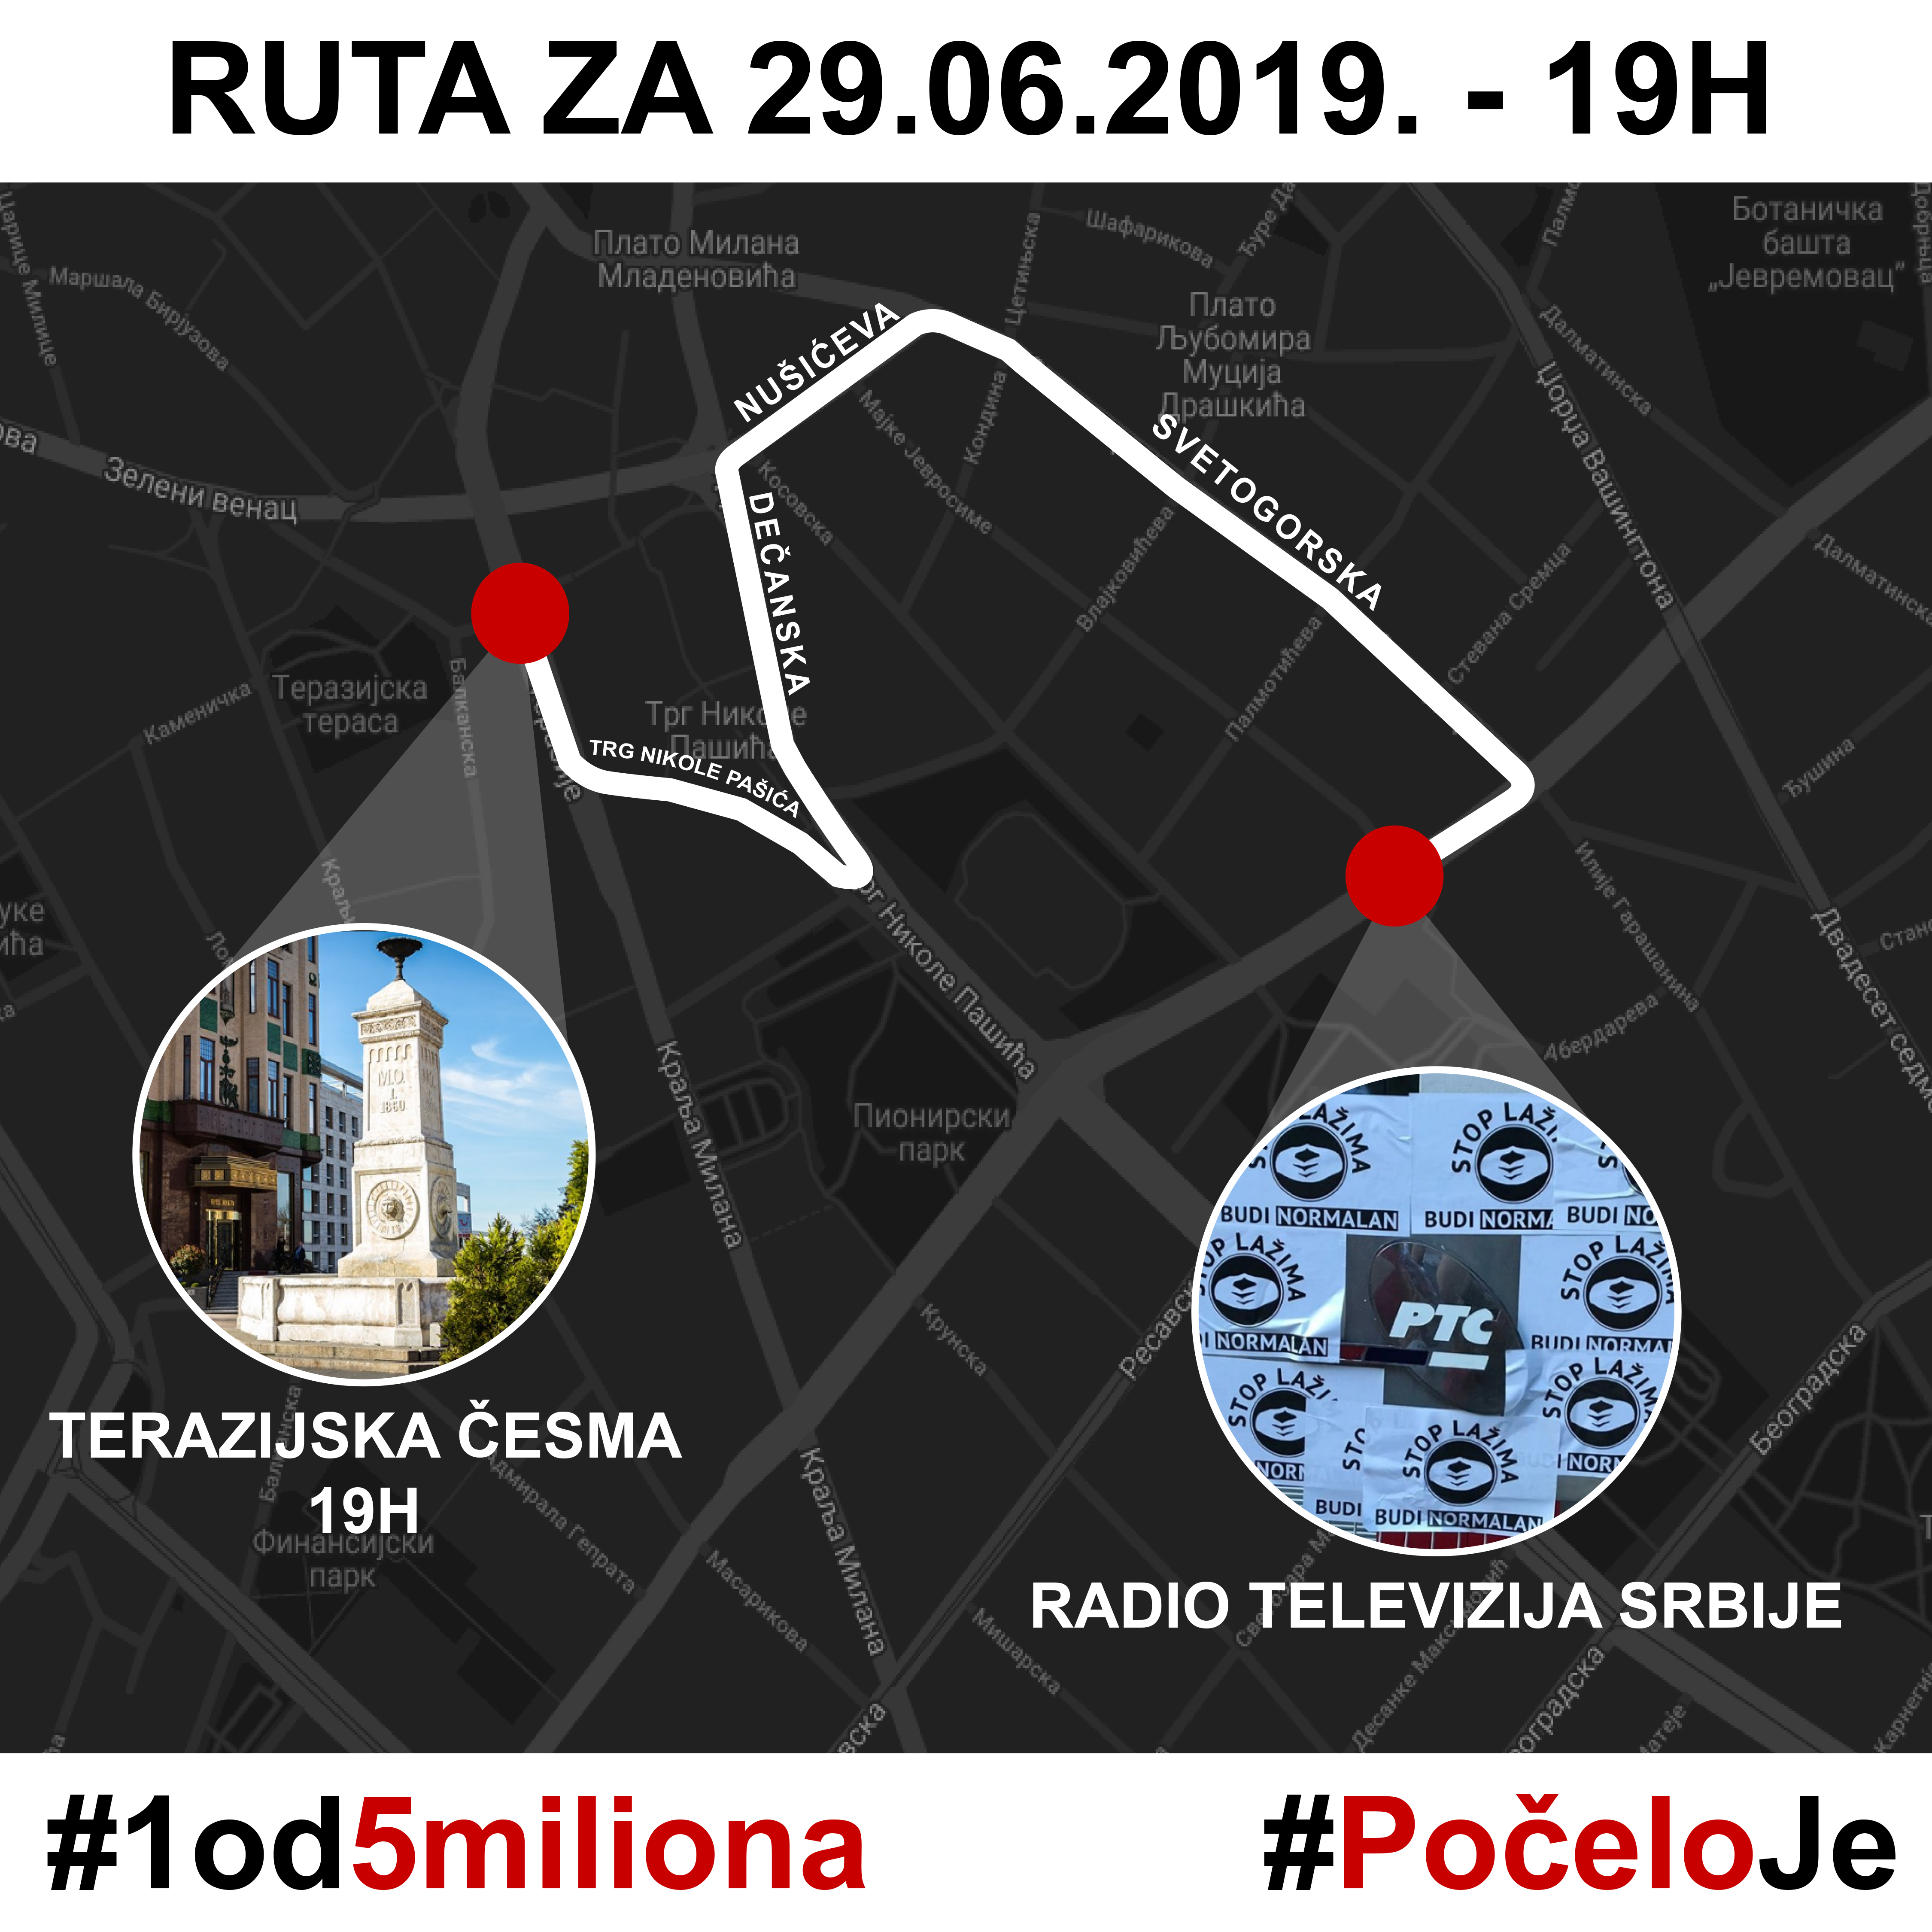 Trideseti protest "1 od 5 miliona" u Beogradu 29. juna (MAPA ŠETNJE) 2